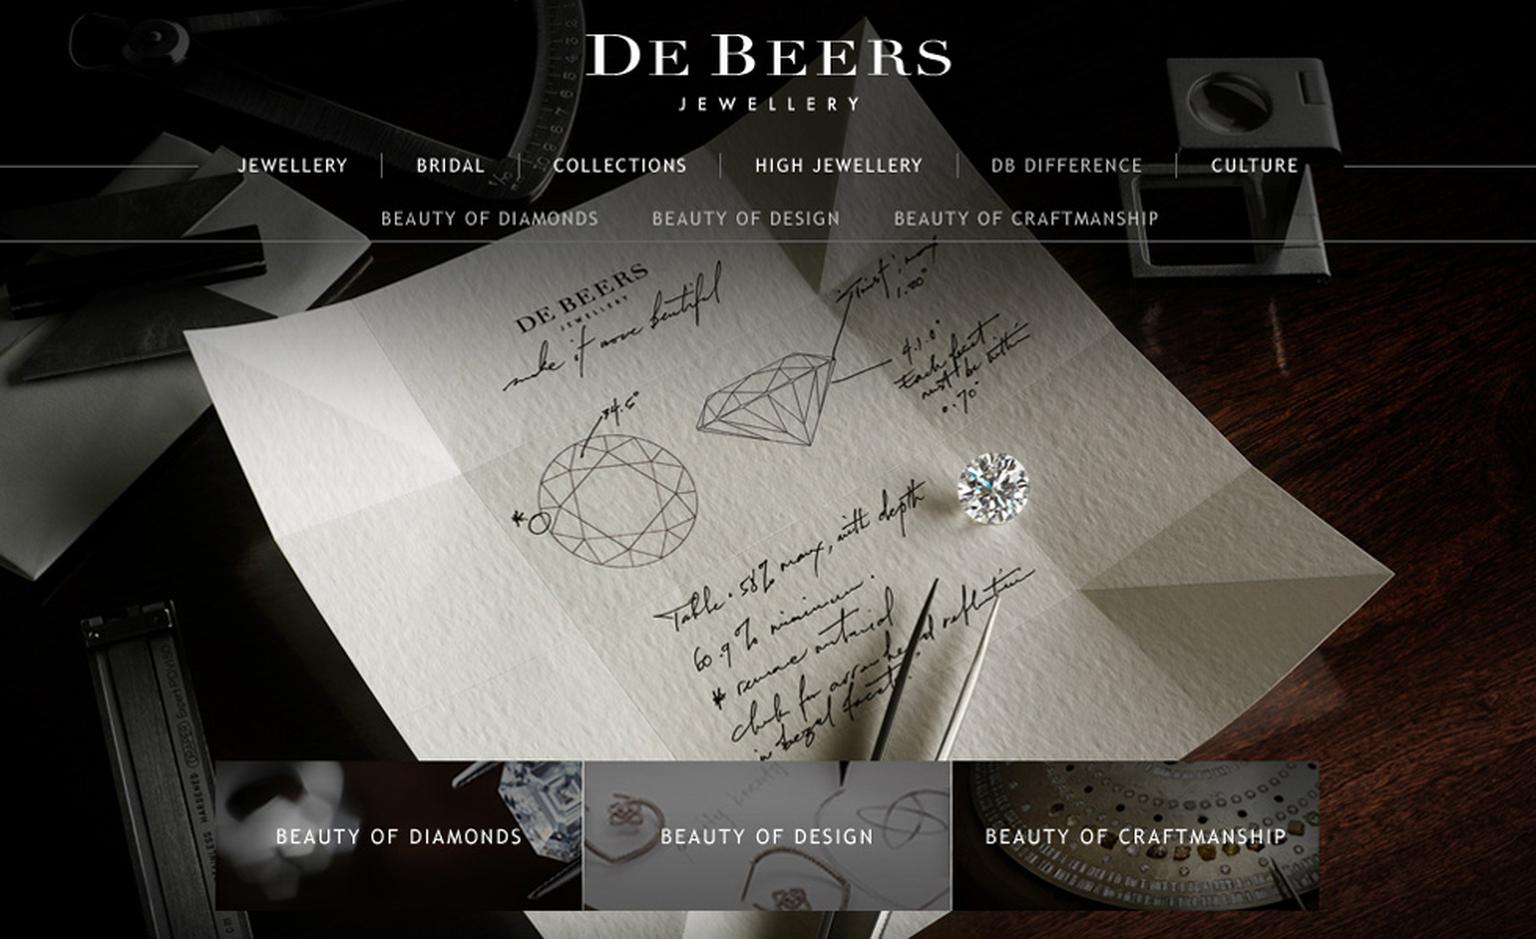 Image from De Beers new website